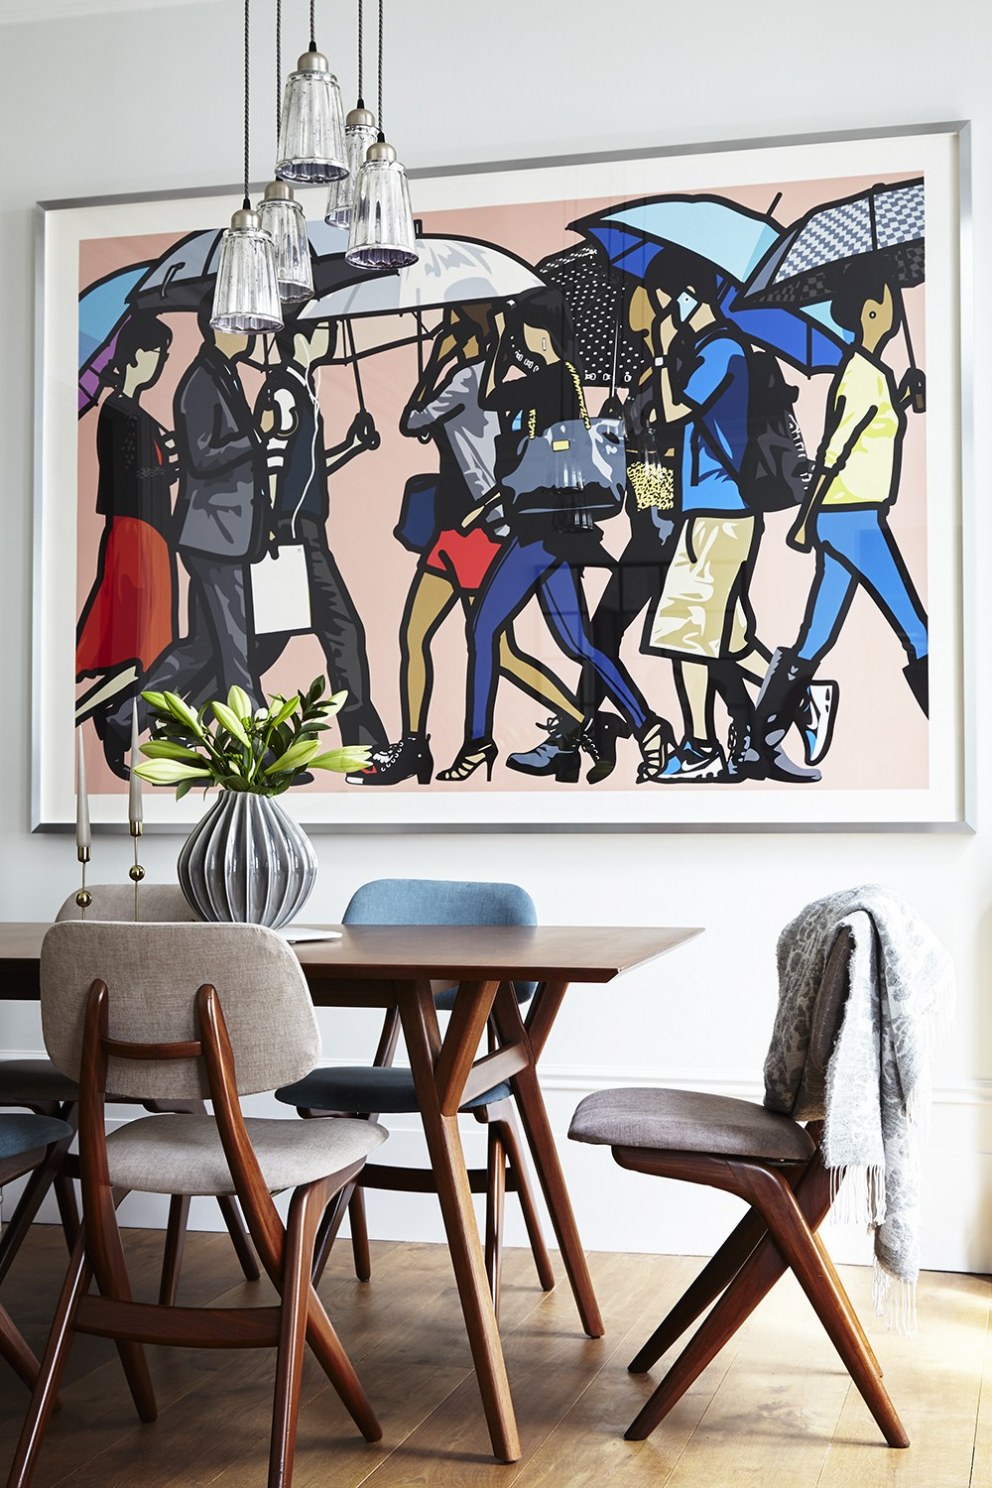 Kensington W8 Apartment | Dining Room | Interior Designers